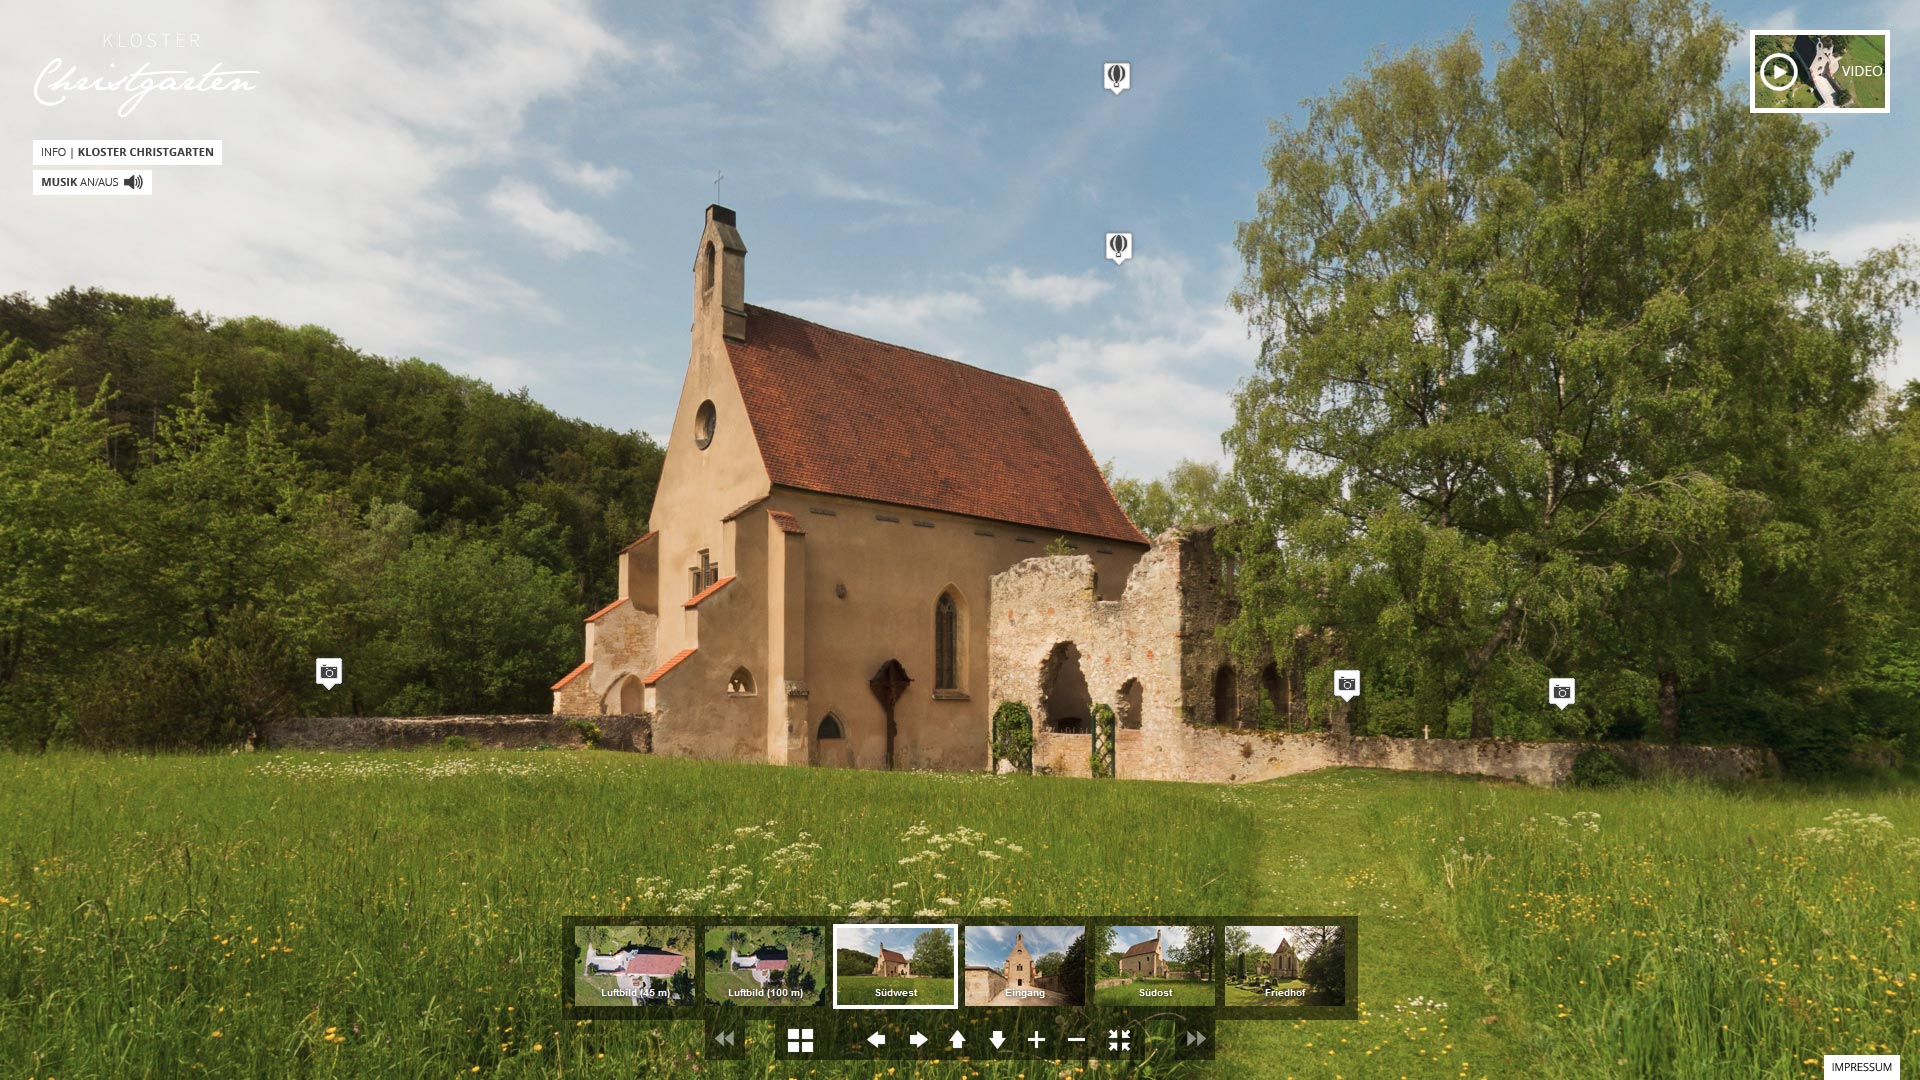 360 Grad Rundgang Kloster Christgarten mit Luftbildaufnahmen